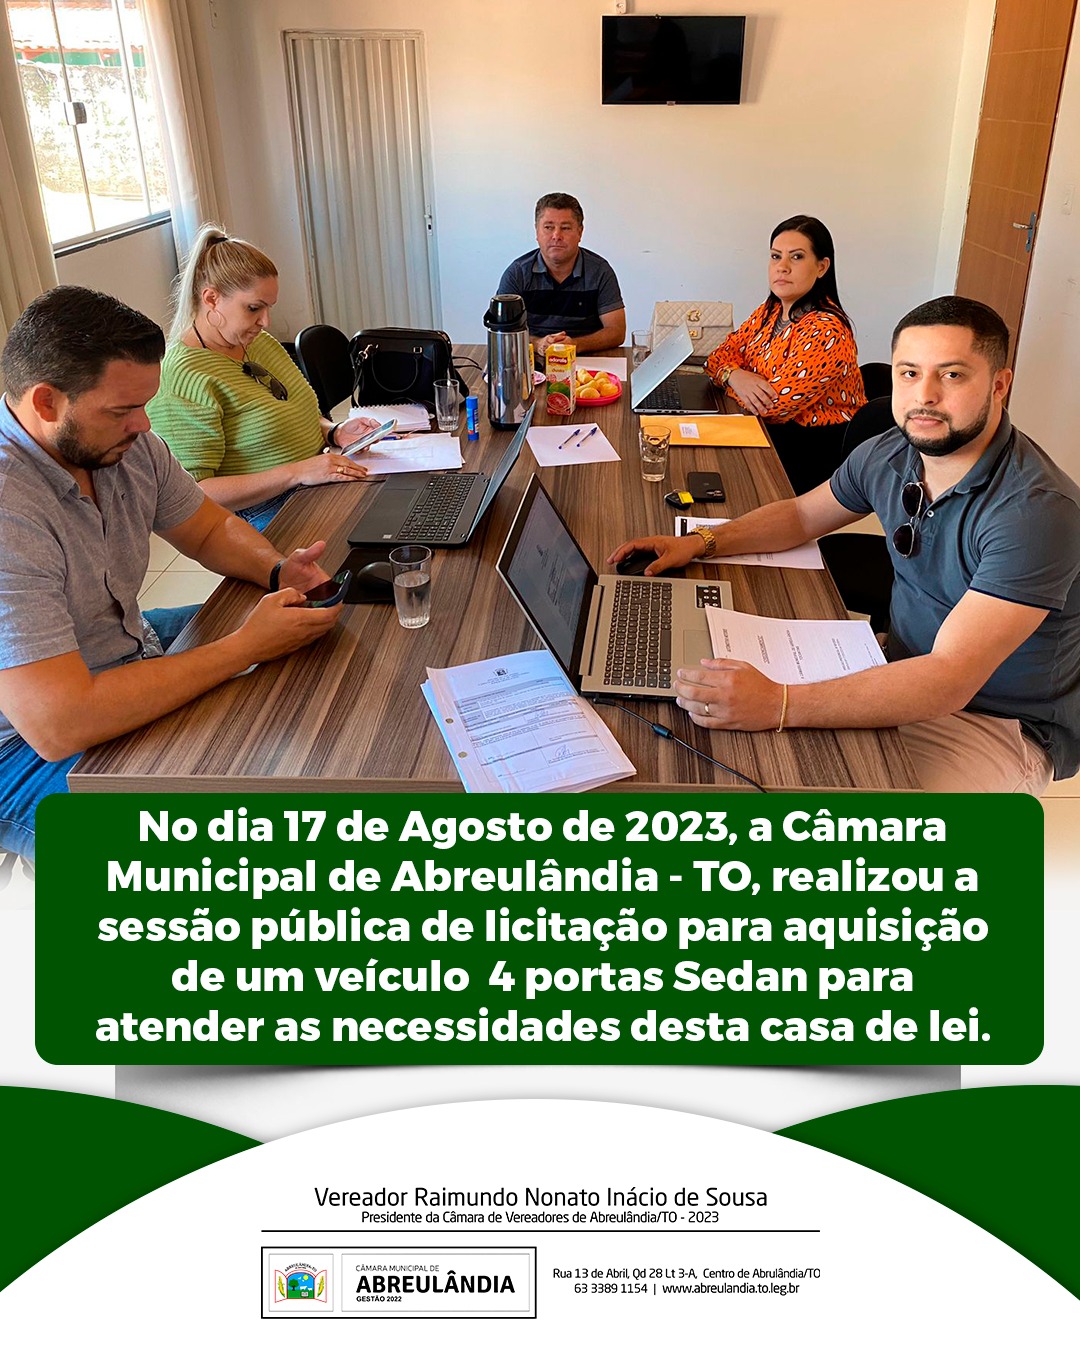 Câmara Municipal de Abreulândia realiza sessão pública de licitação para aquisição de veículo 4 portas Sedan